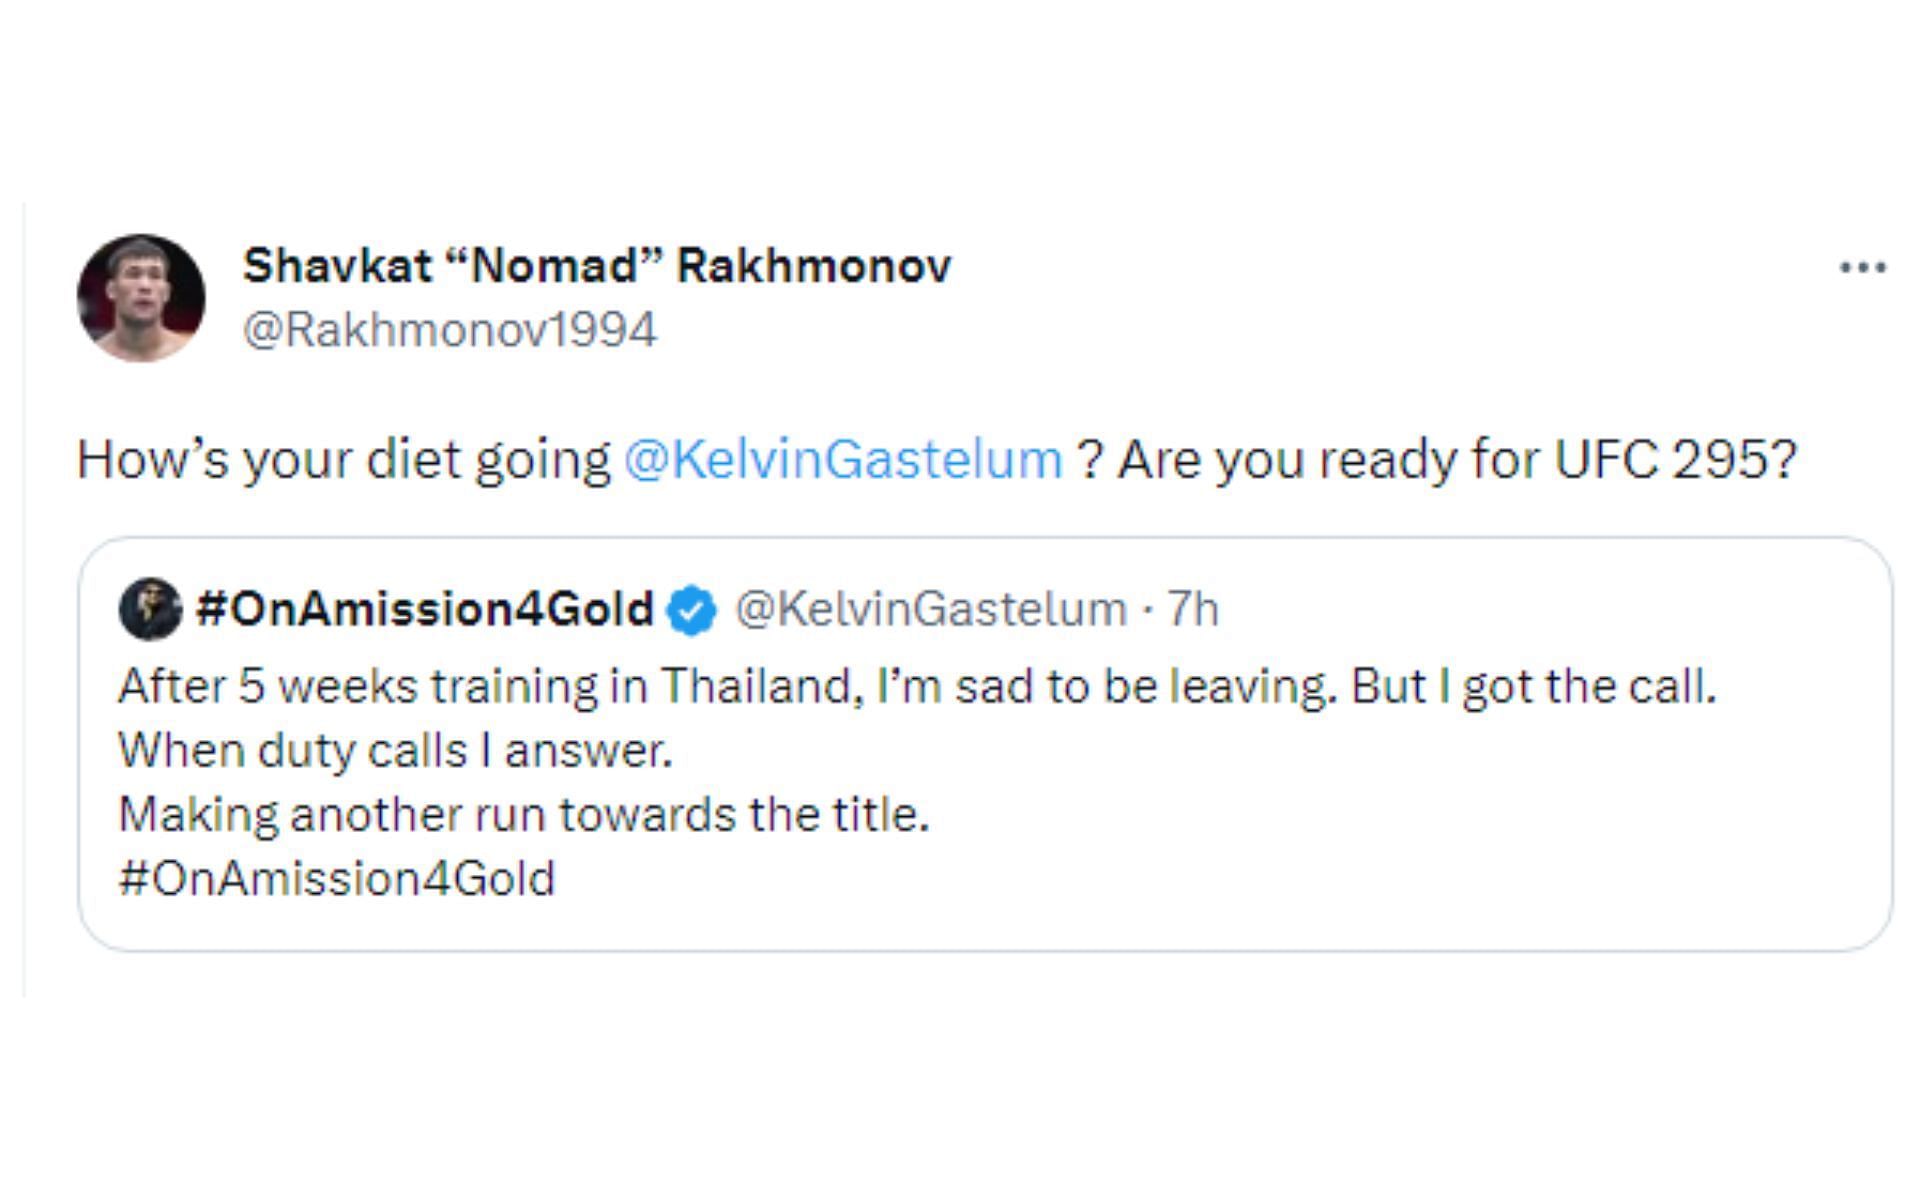 Tweet directed towards Kelvin Gastelum